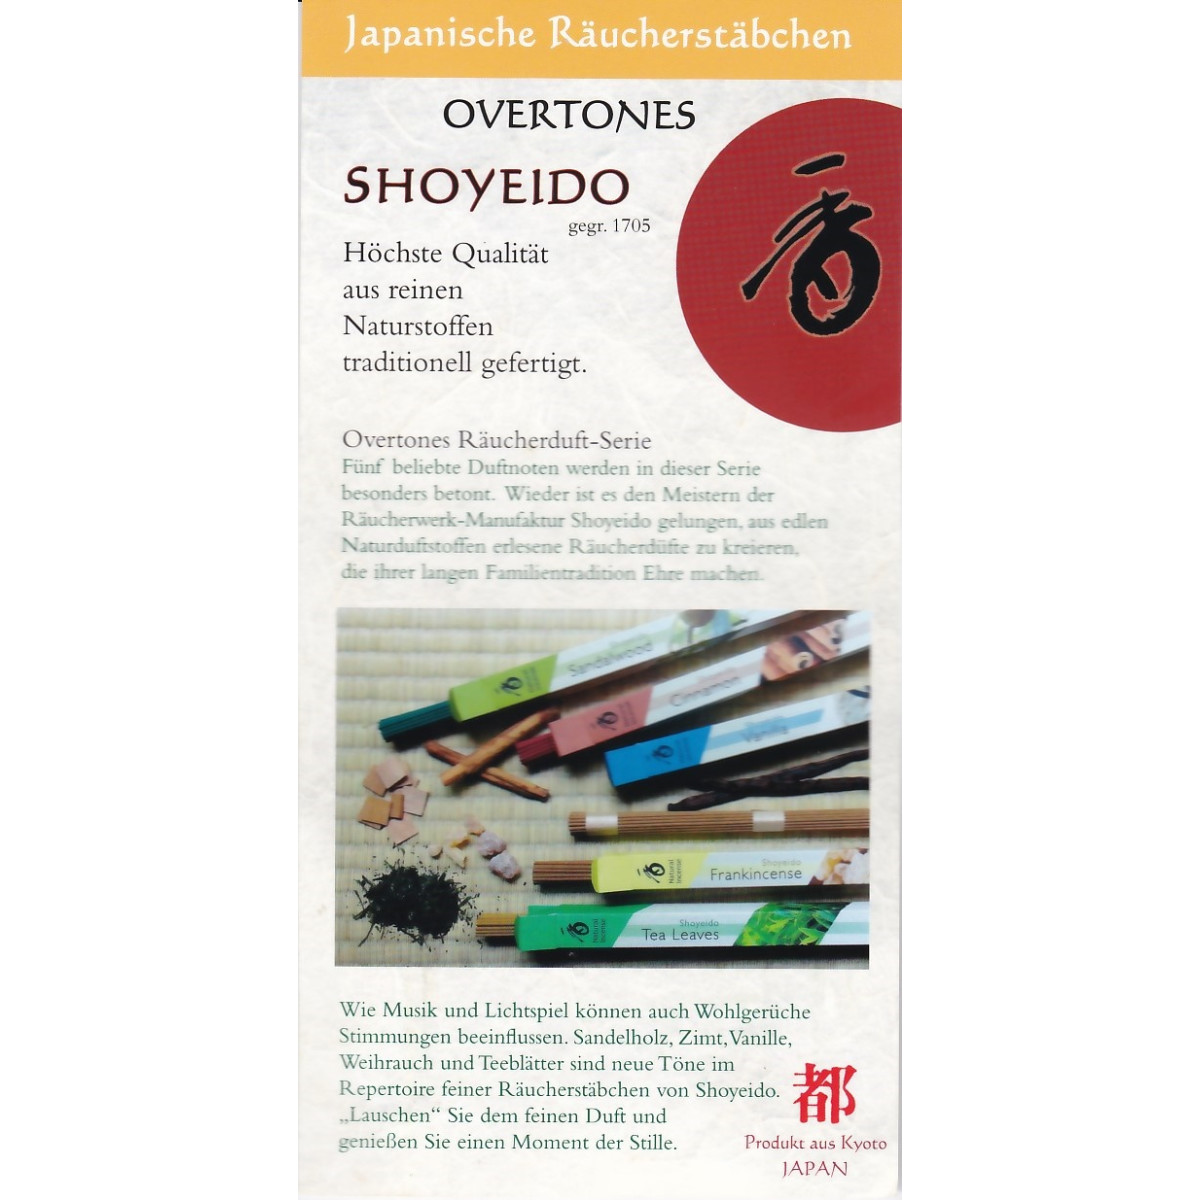 Shoyeido Overtones - Duftpropen zum Testen